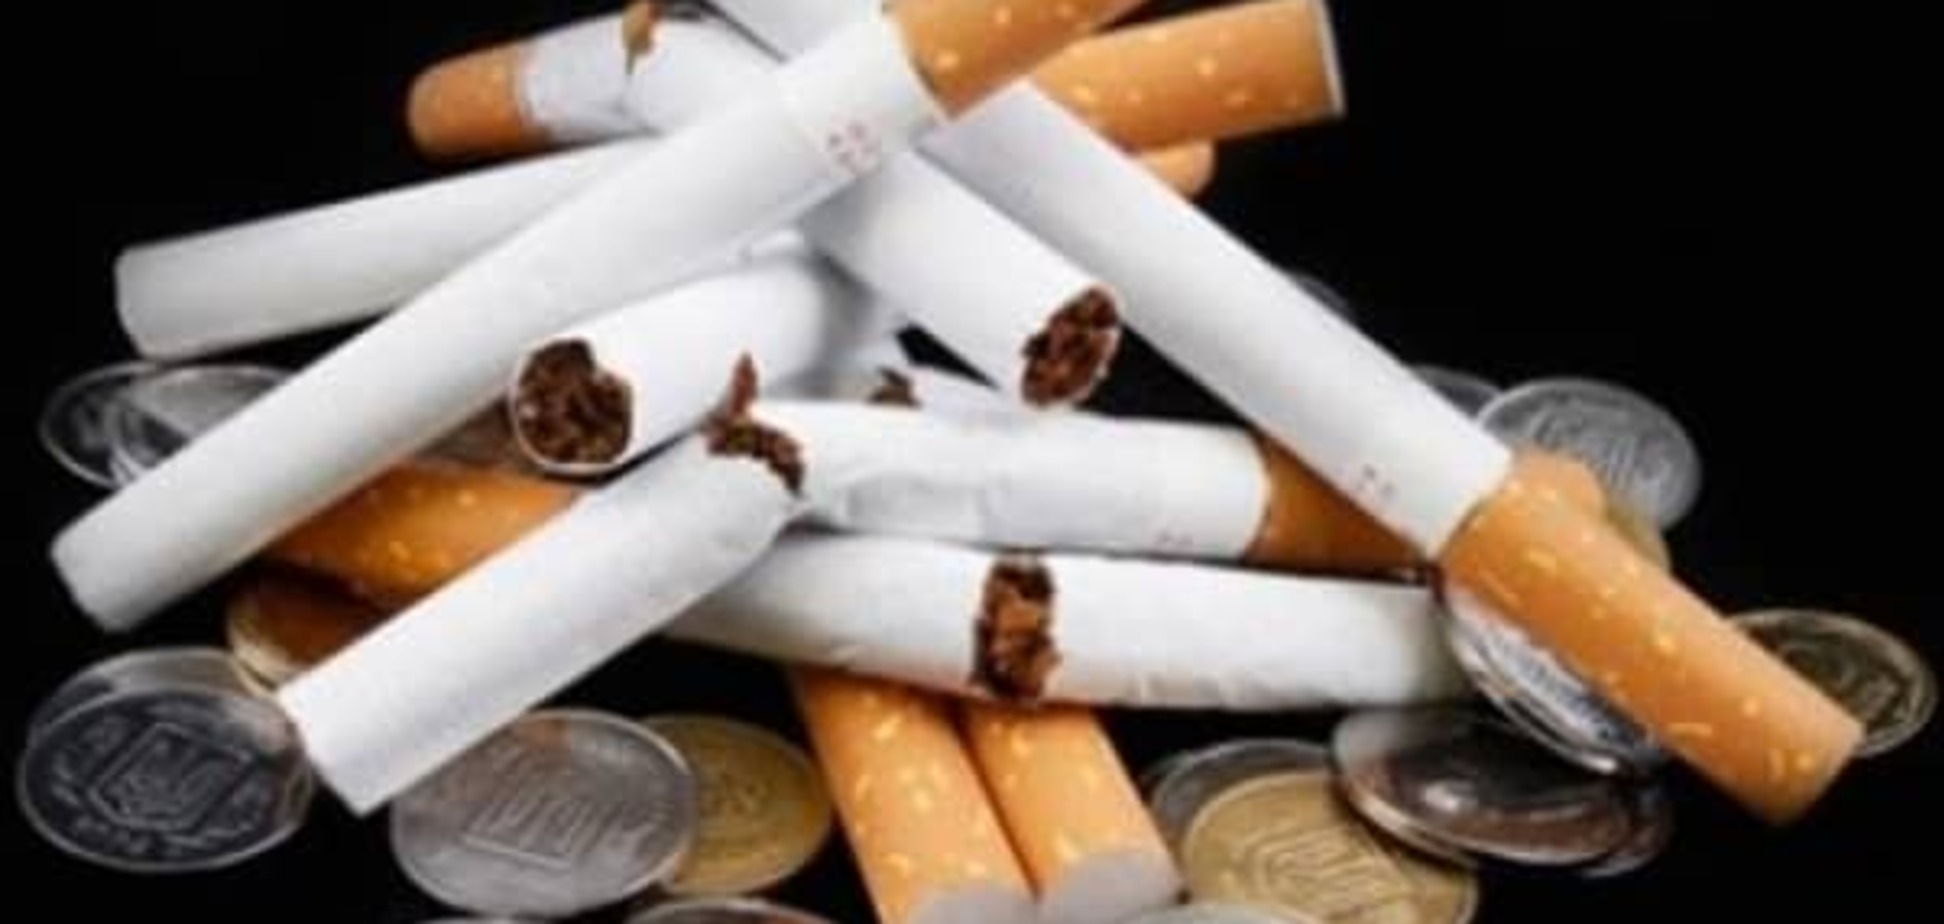 Сигарети в Україні можуть стати предметом розкоші - експерти